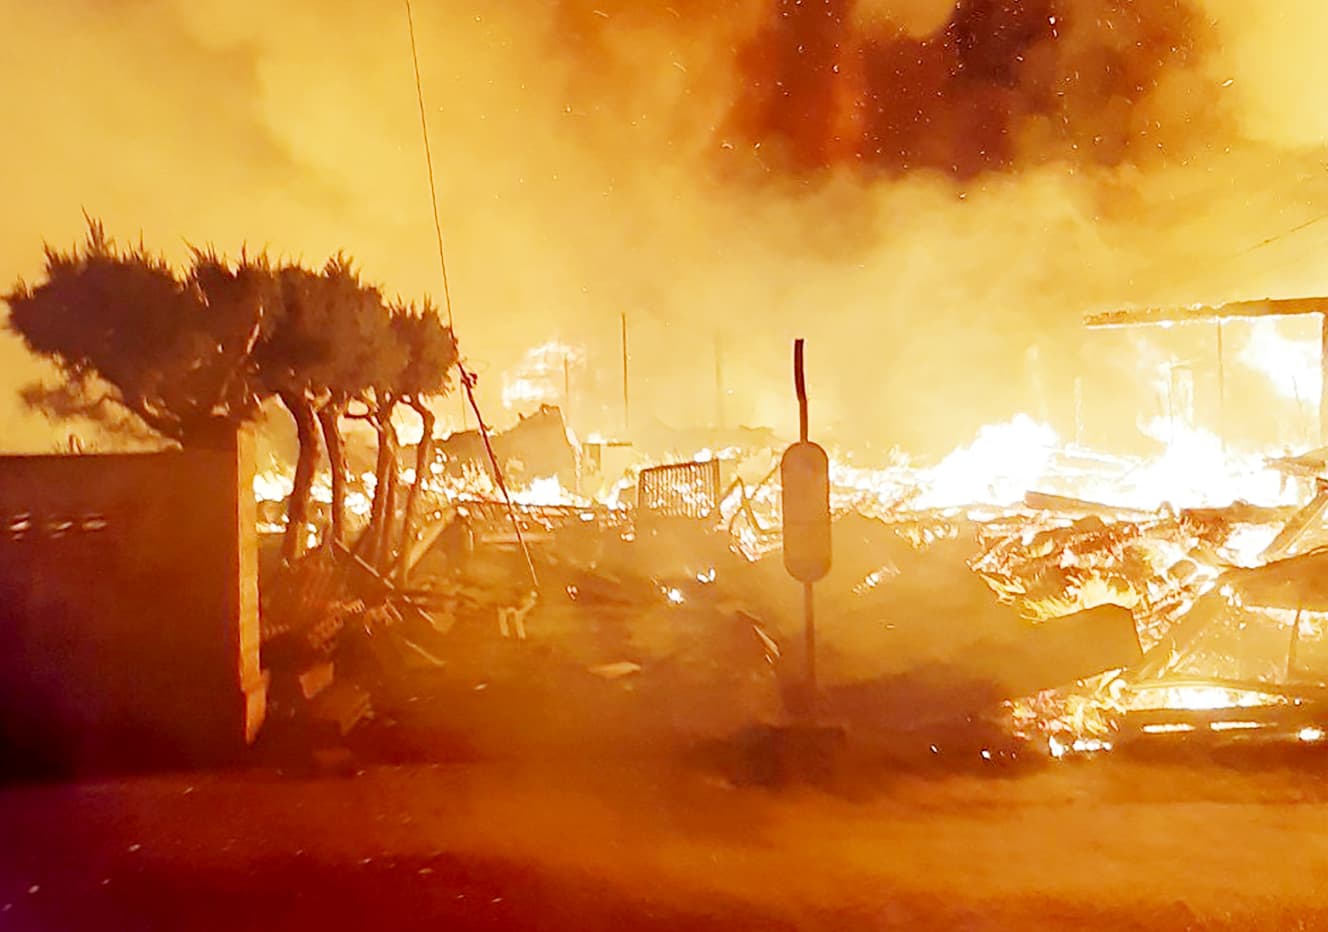 輪島市の朝市を襲った大火災。密集した木造住宅が火事拡大の原因となった